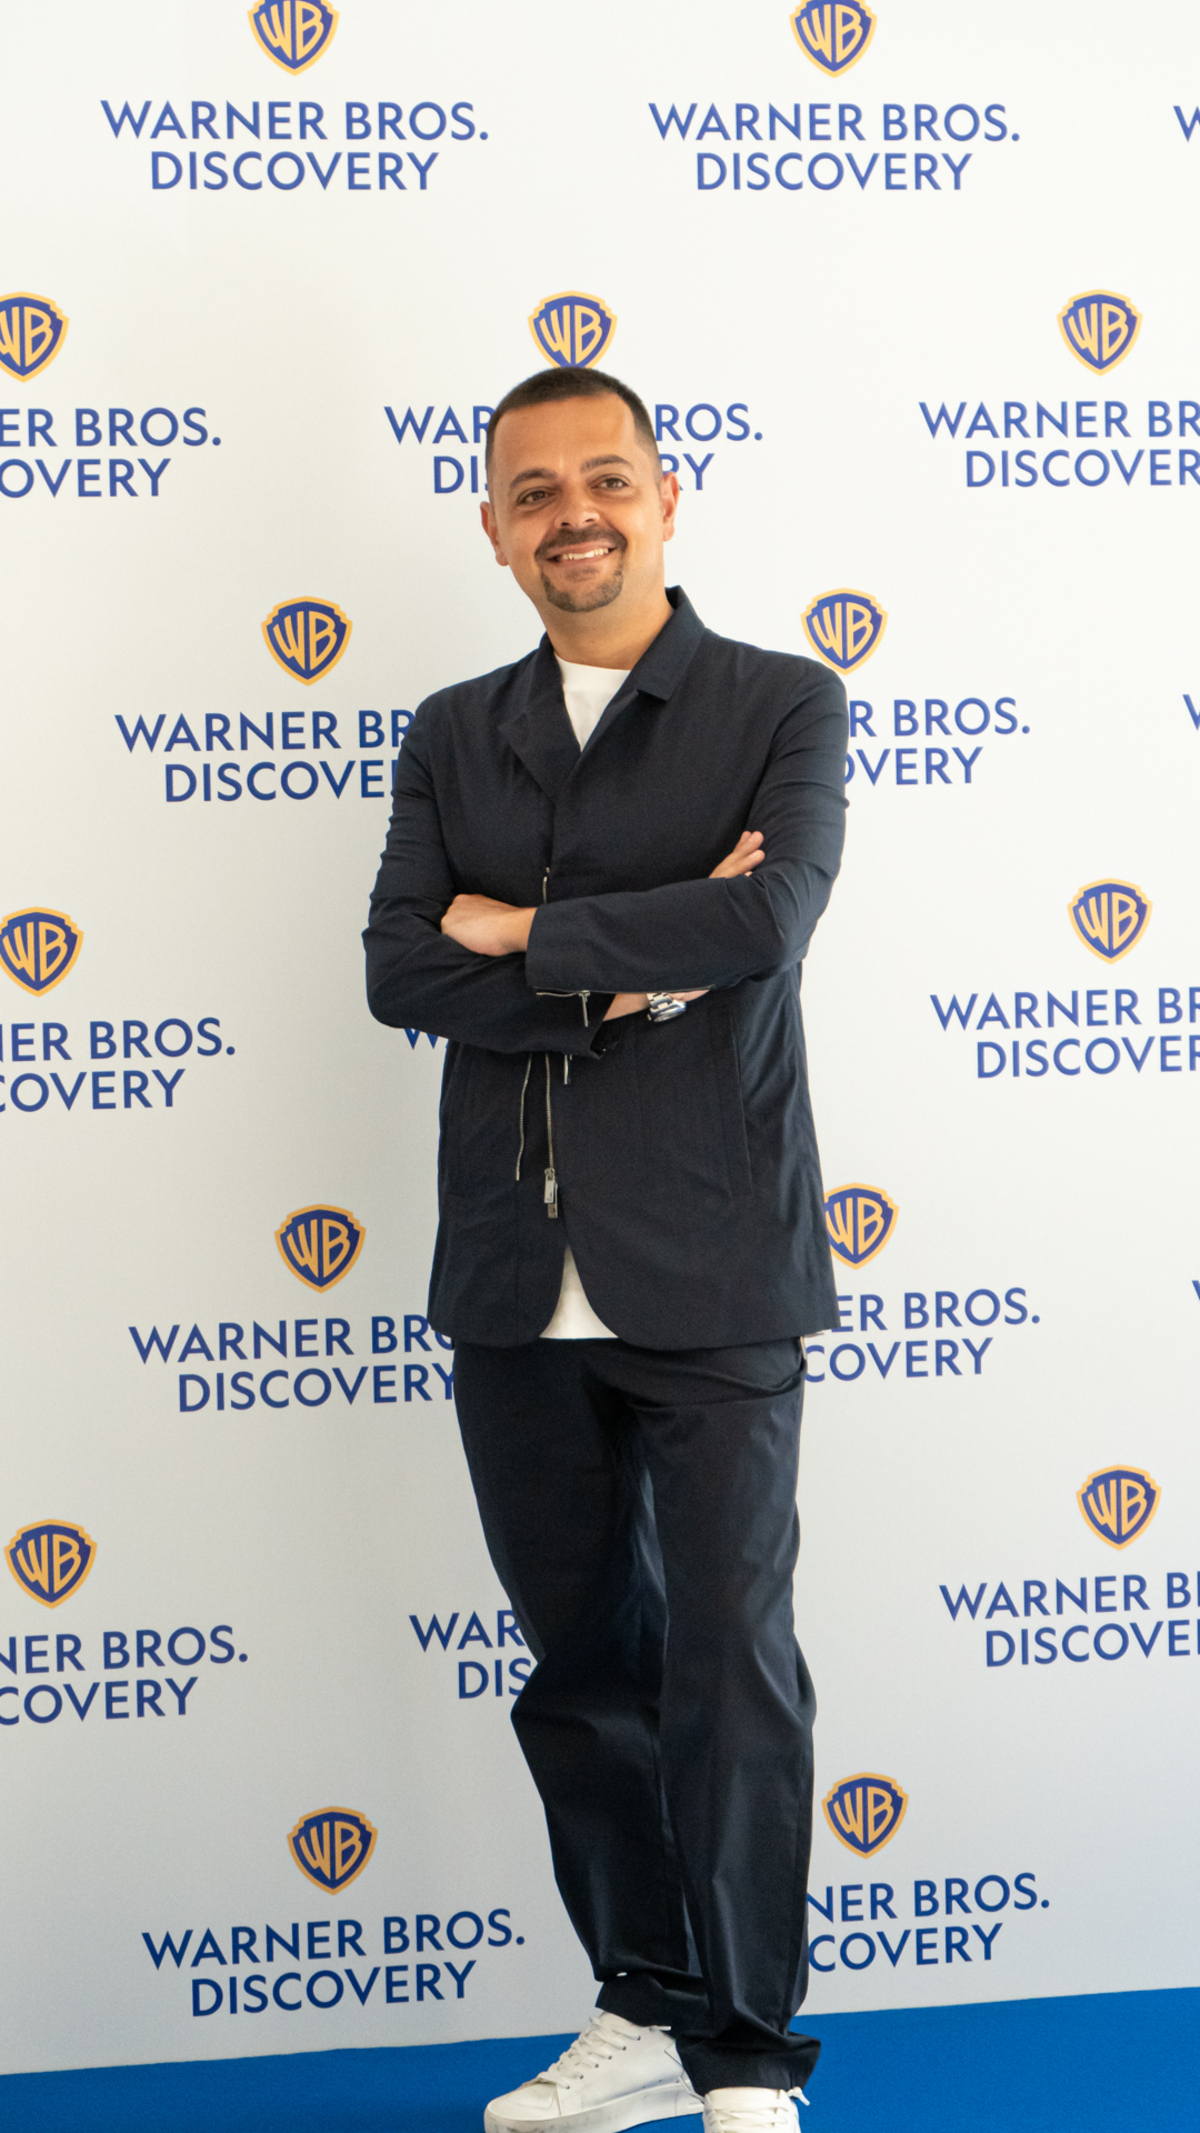 Conferenza stampa Warner Bros